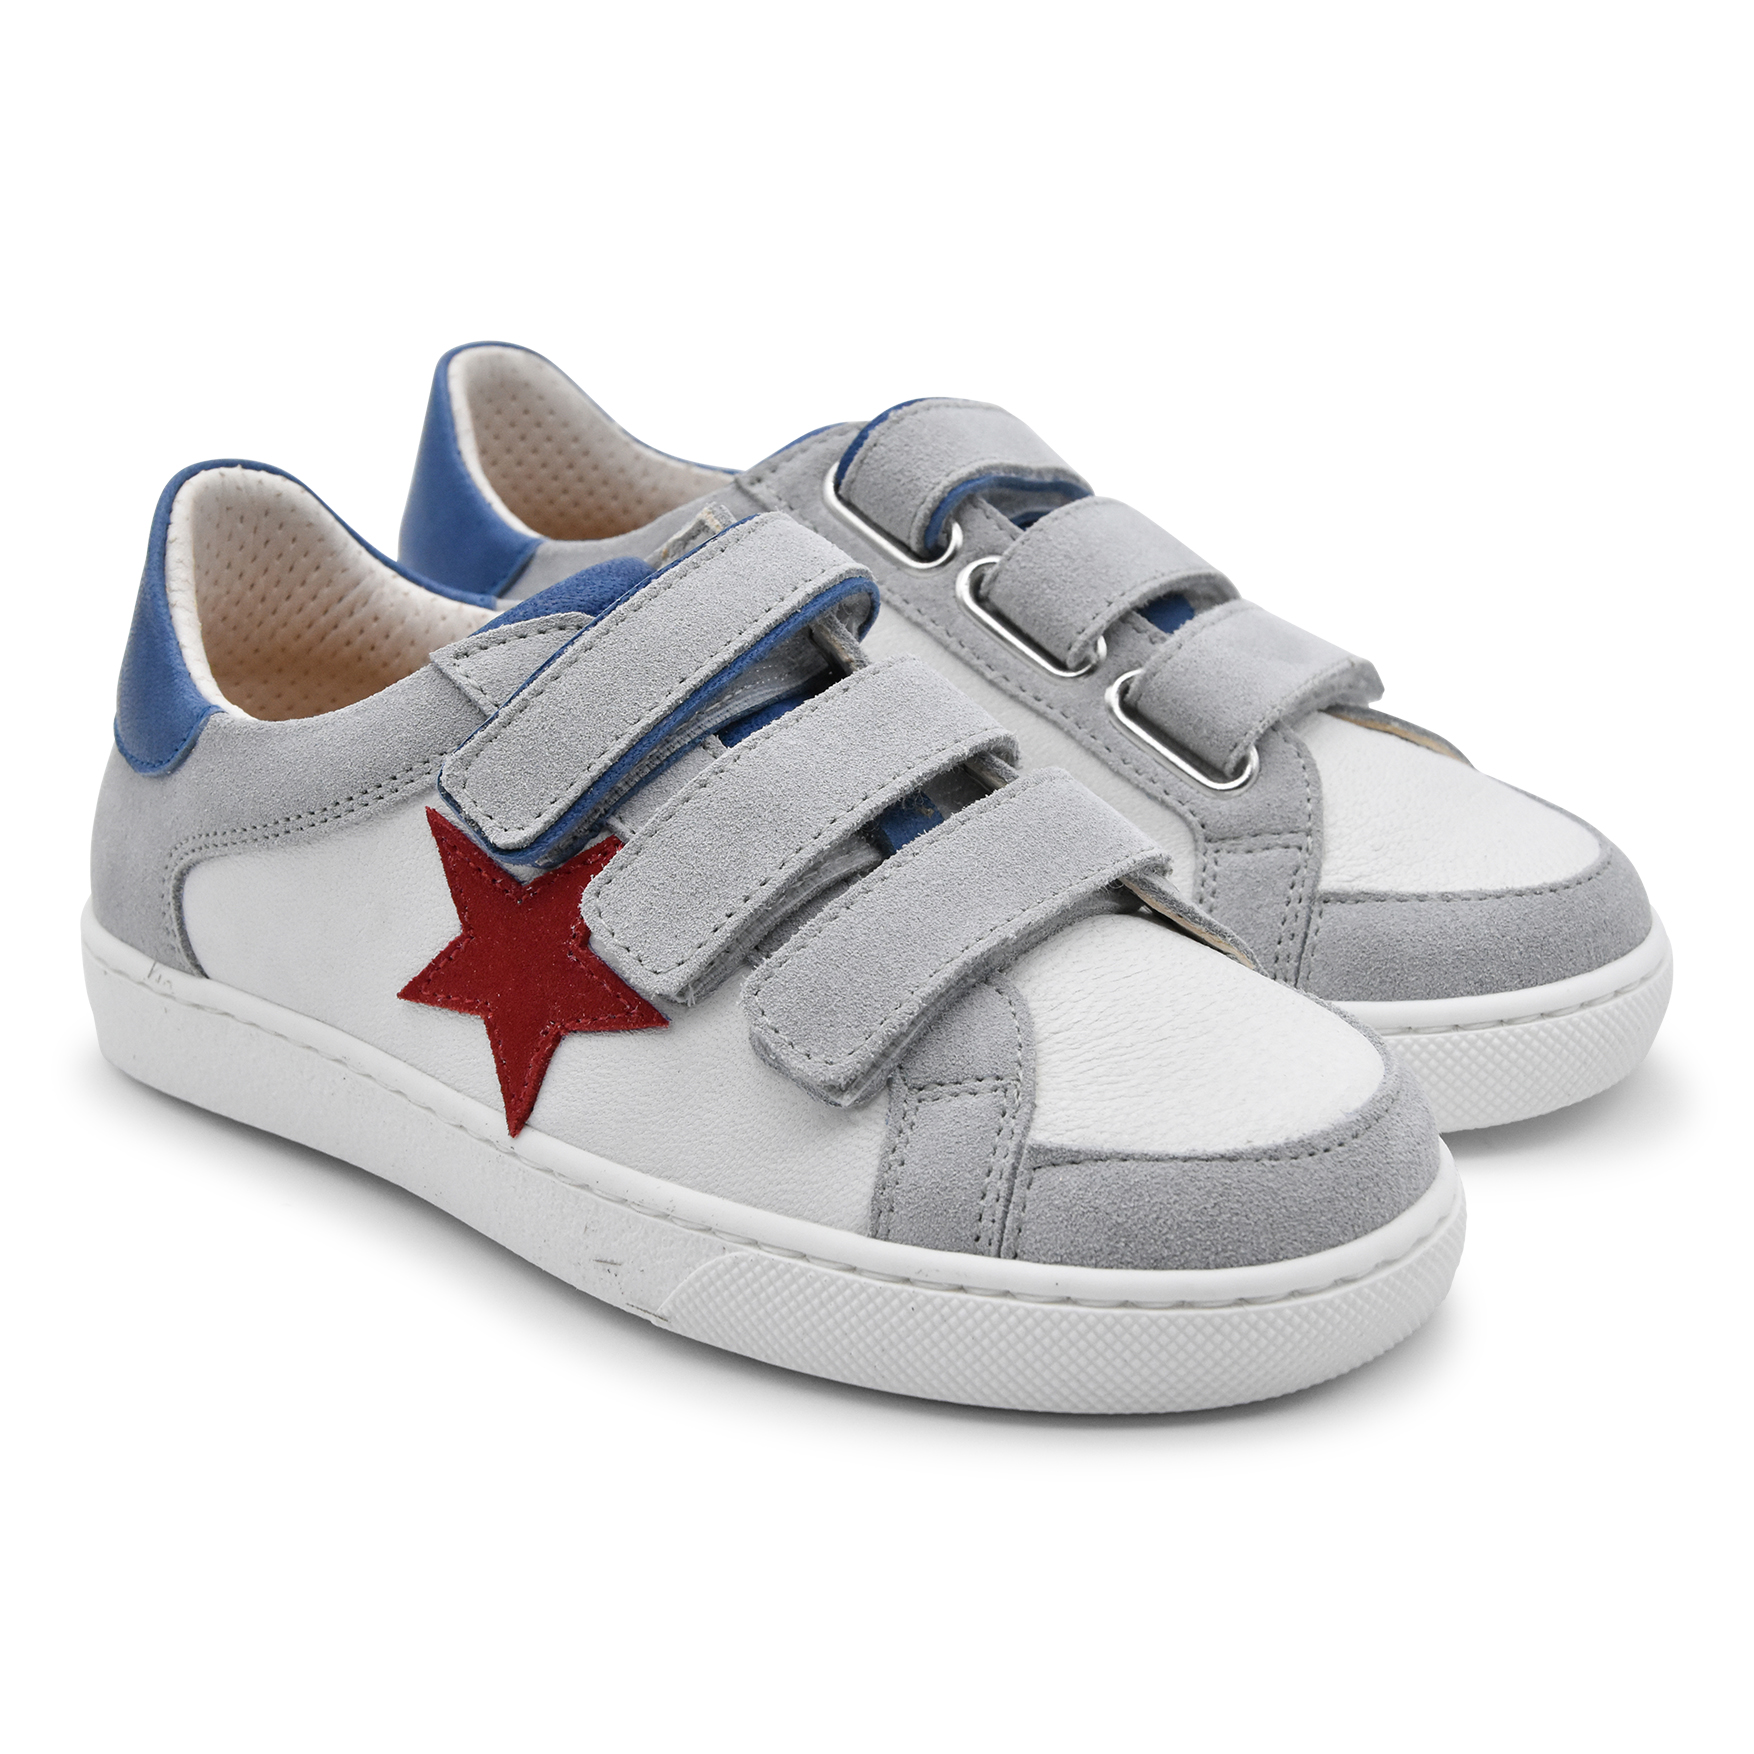 Zecchino D'oro, sneakers, made in Italy, bianco, grigio, azzurro, stella rossa, nabuk, pelle, velcro, fronte